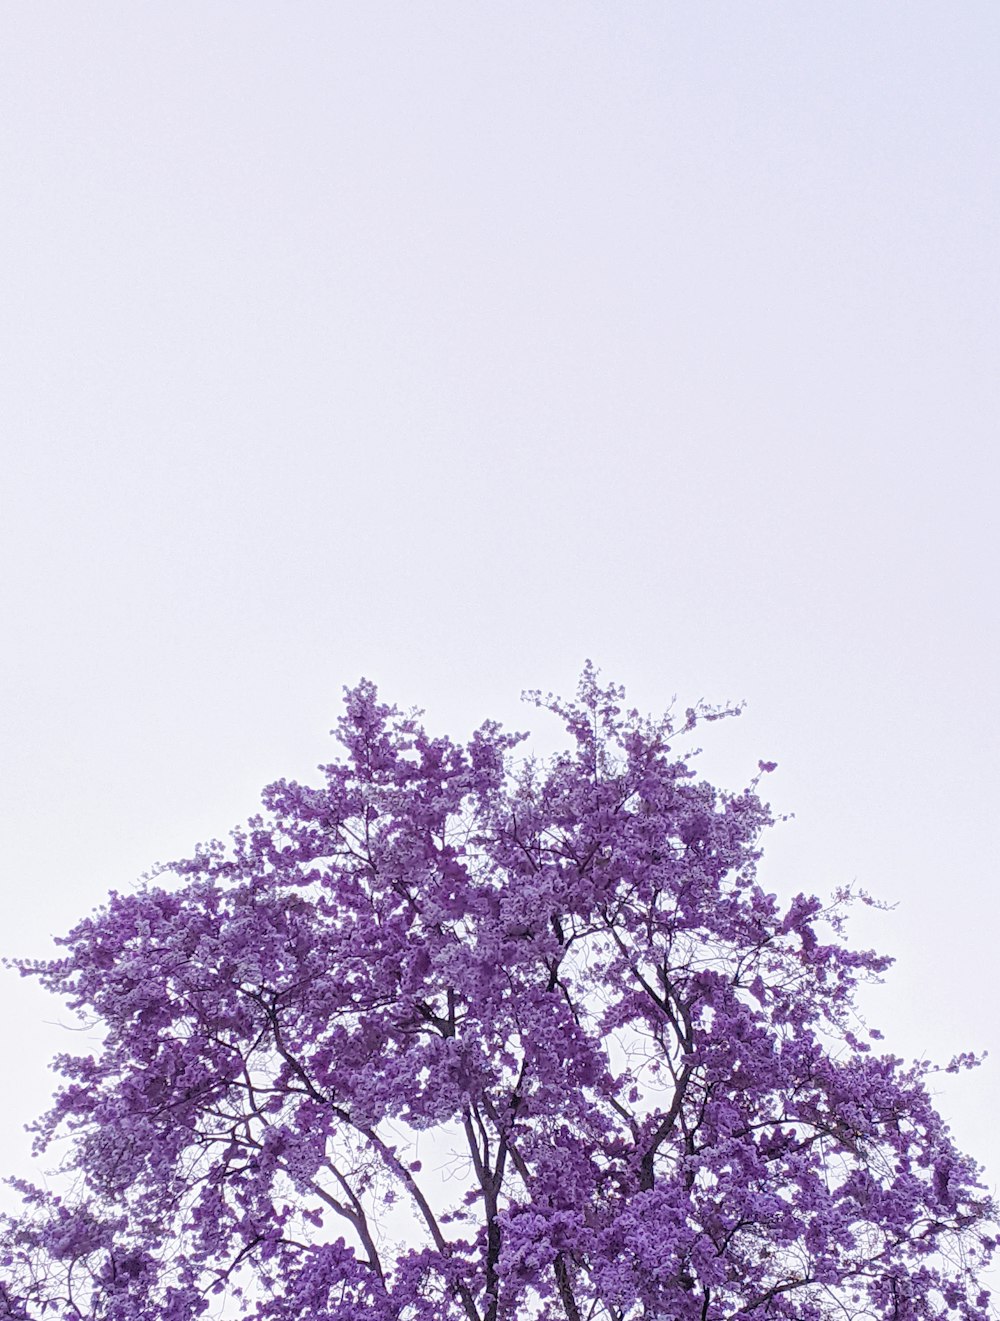 albero foglia viola sotto cielo bianco